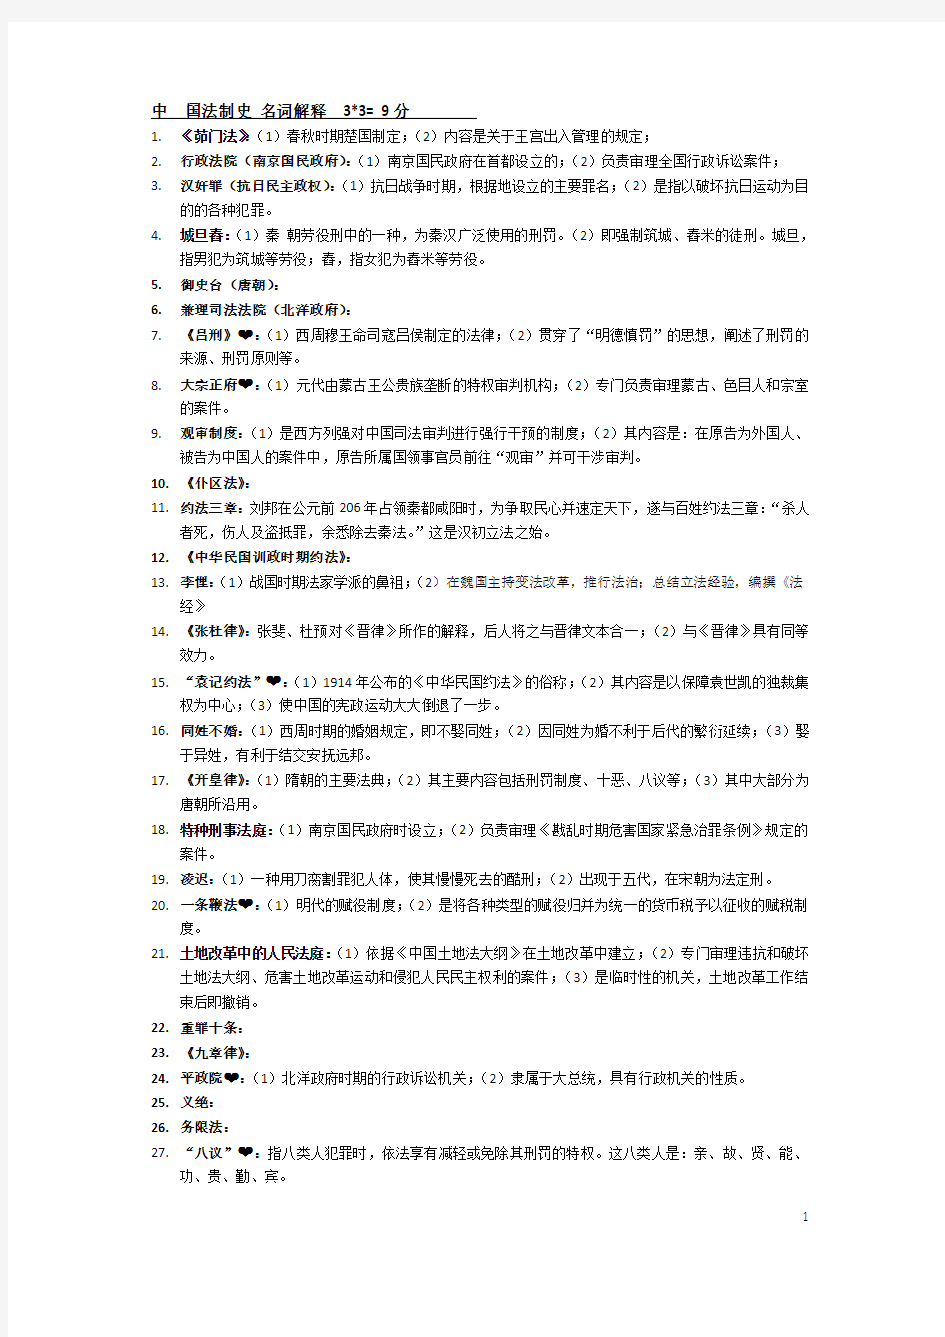 自学考试中国法制史 名词解释9分